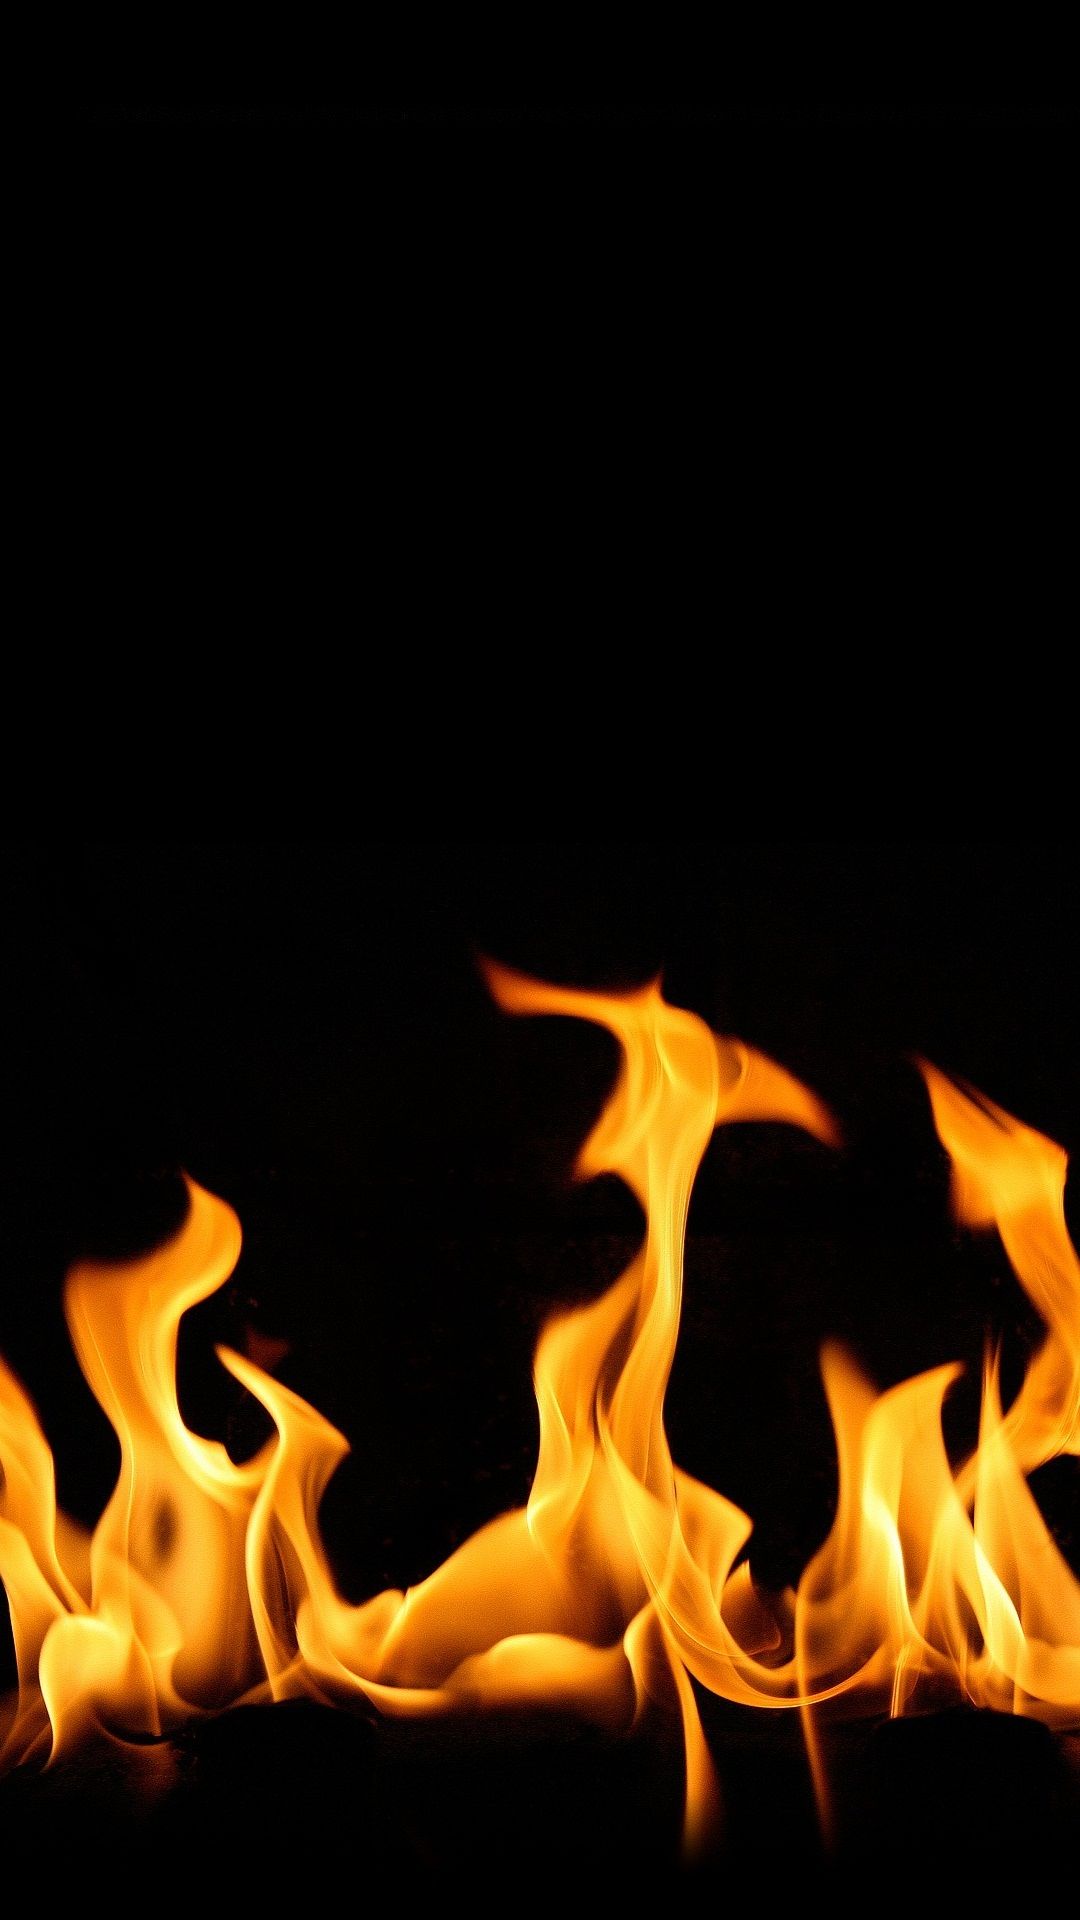 Fire Flame iPhone Wallpaper 3D iPhone Wallpaper